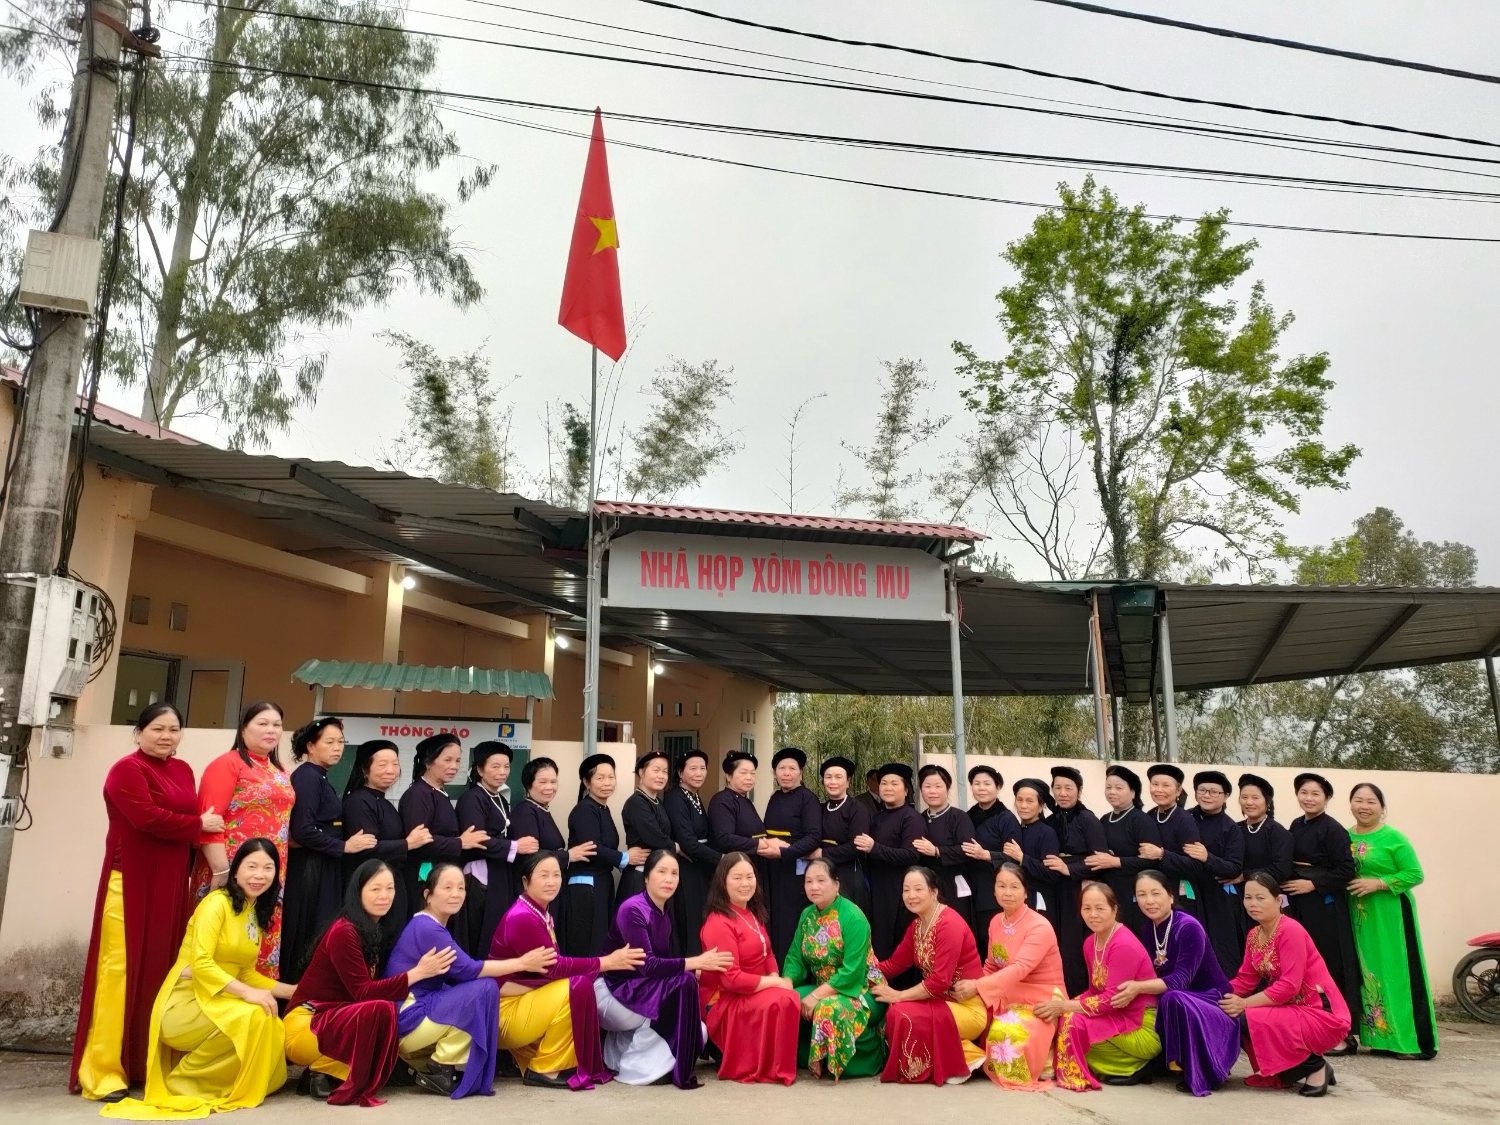 cấp Hội LHPN huyện Hạ Lang tổ chức nhiều hoạt động  kỷ niệm 114 năm Ngày Quốc tế phụ nữ 8/3